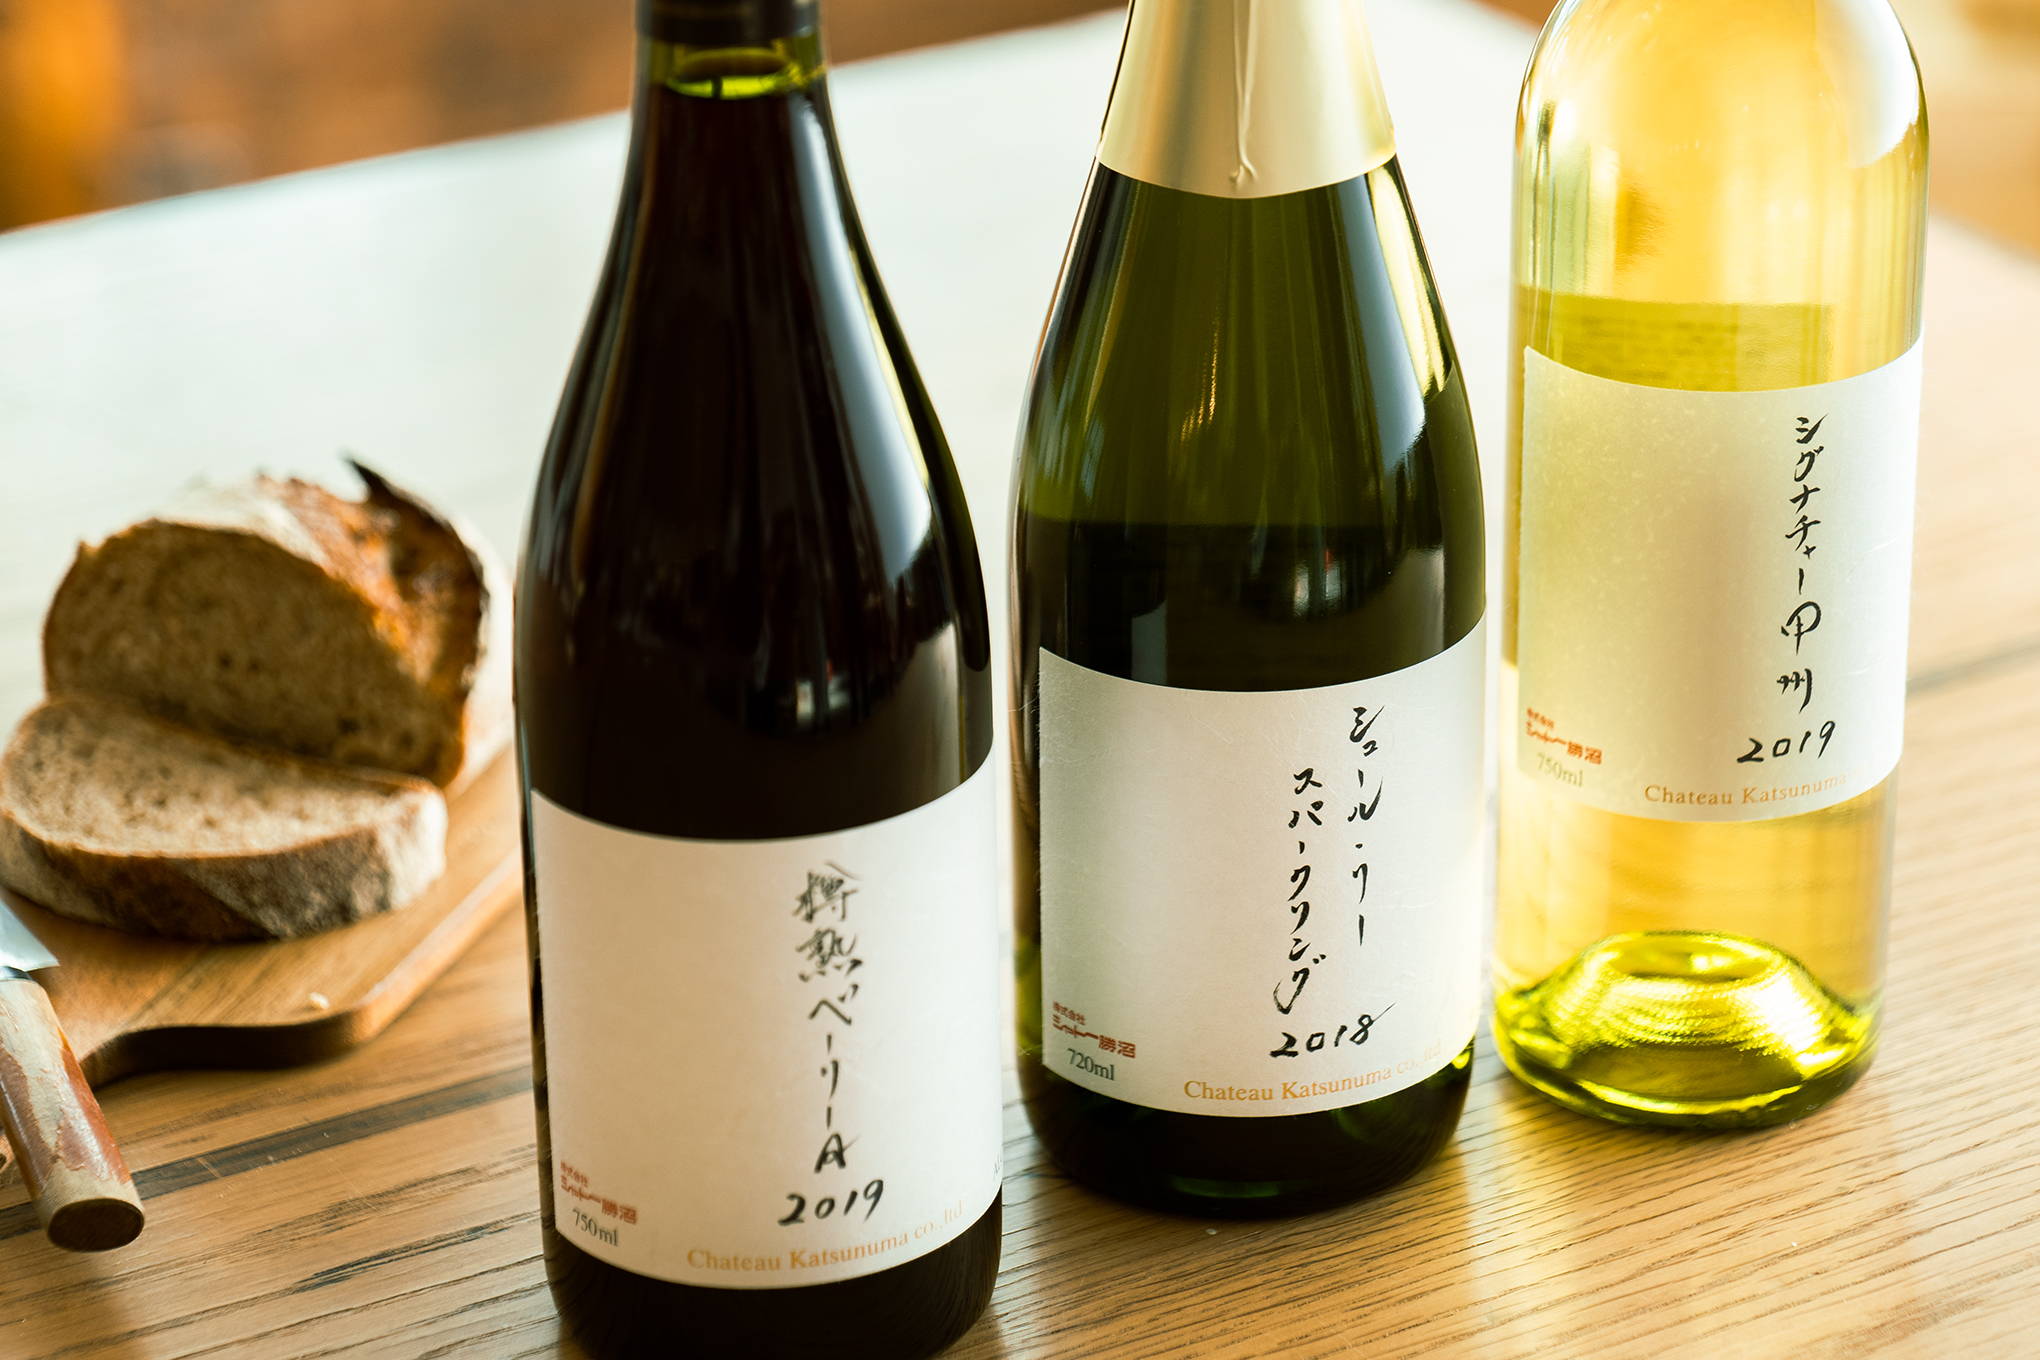 スパークリング、白、赤とそろった『シャトー勝沼』の限定醸造ワインシリーズ。特別な日にも、家庭でのあたたかい手作り料理にも寄り添う味わい。